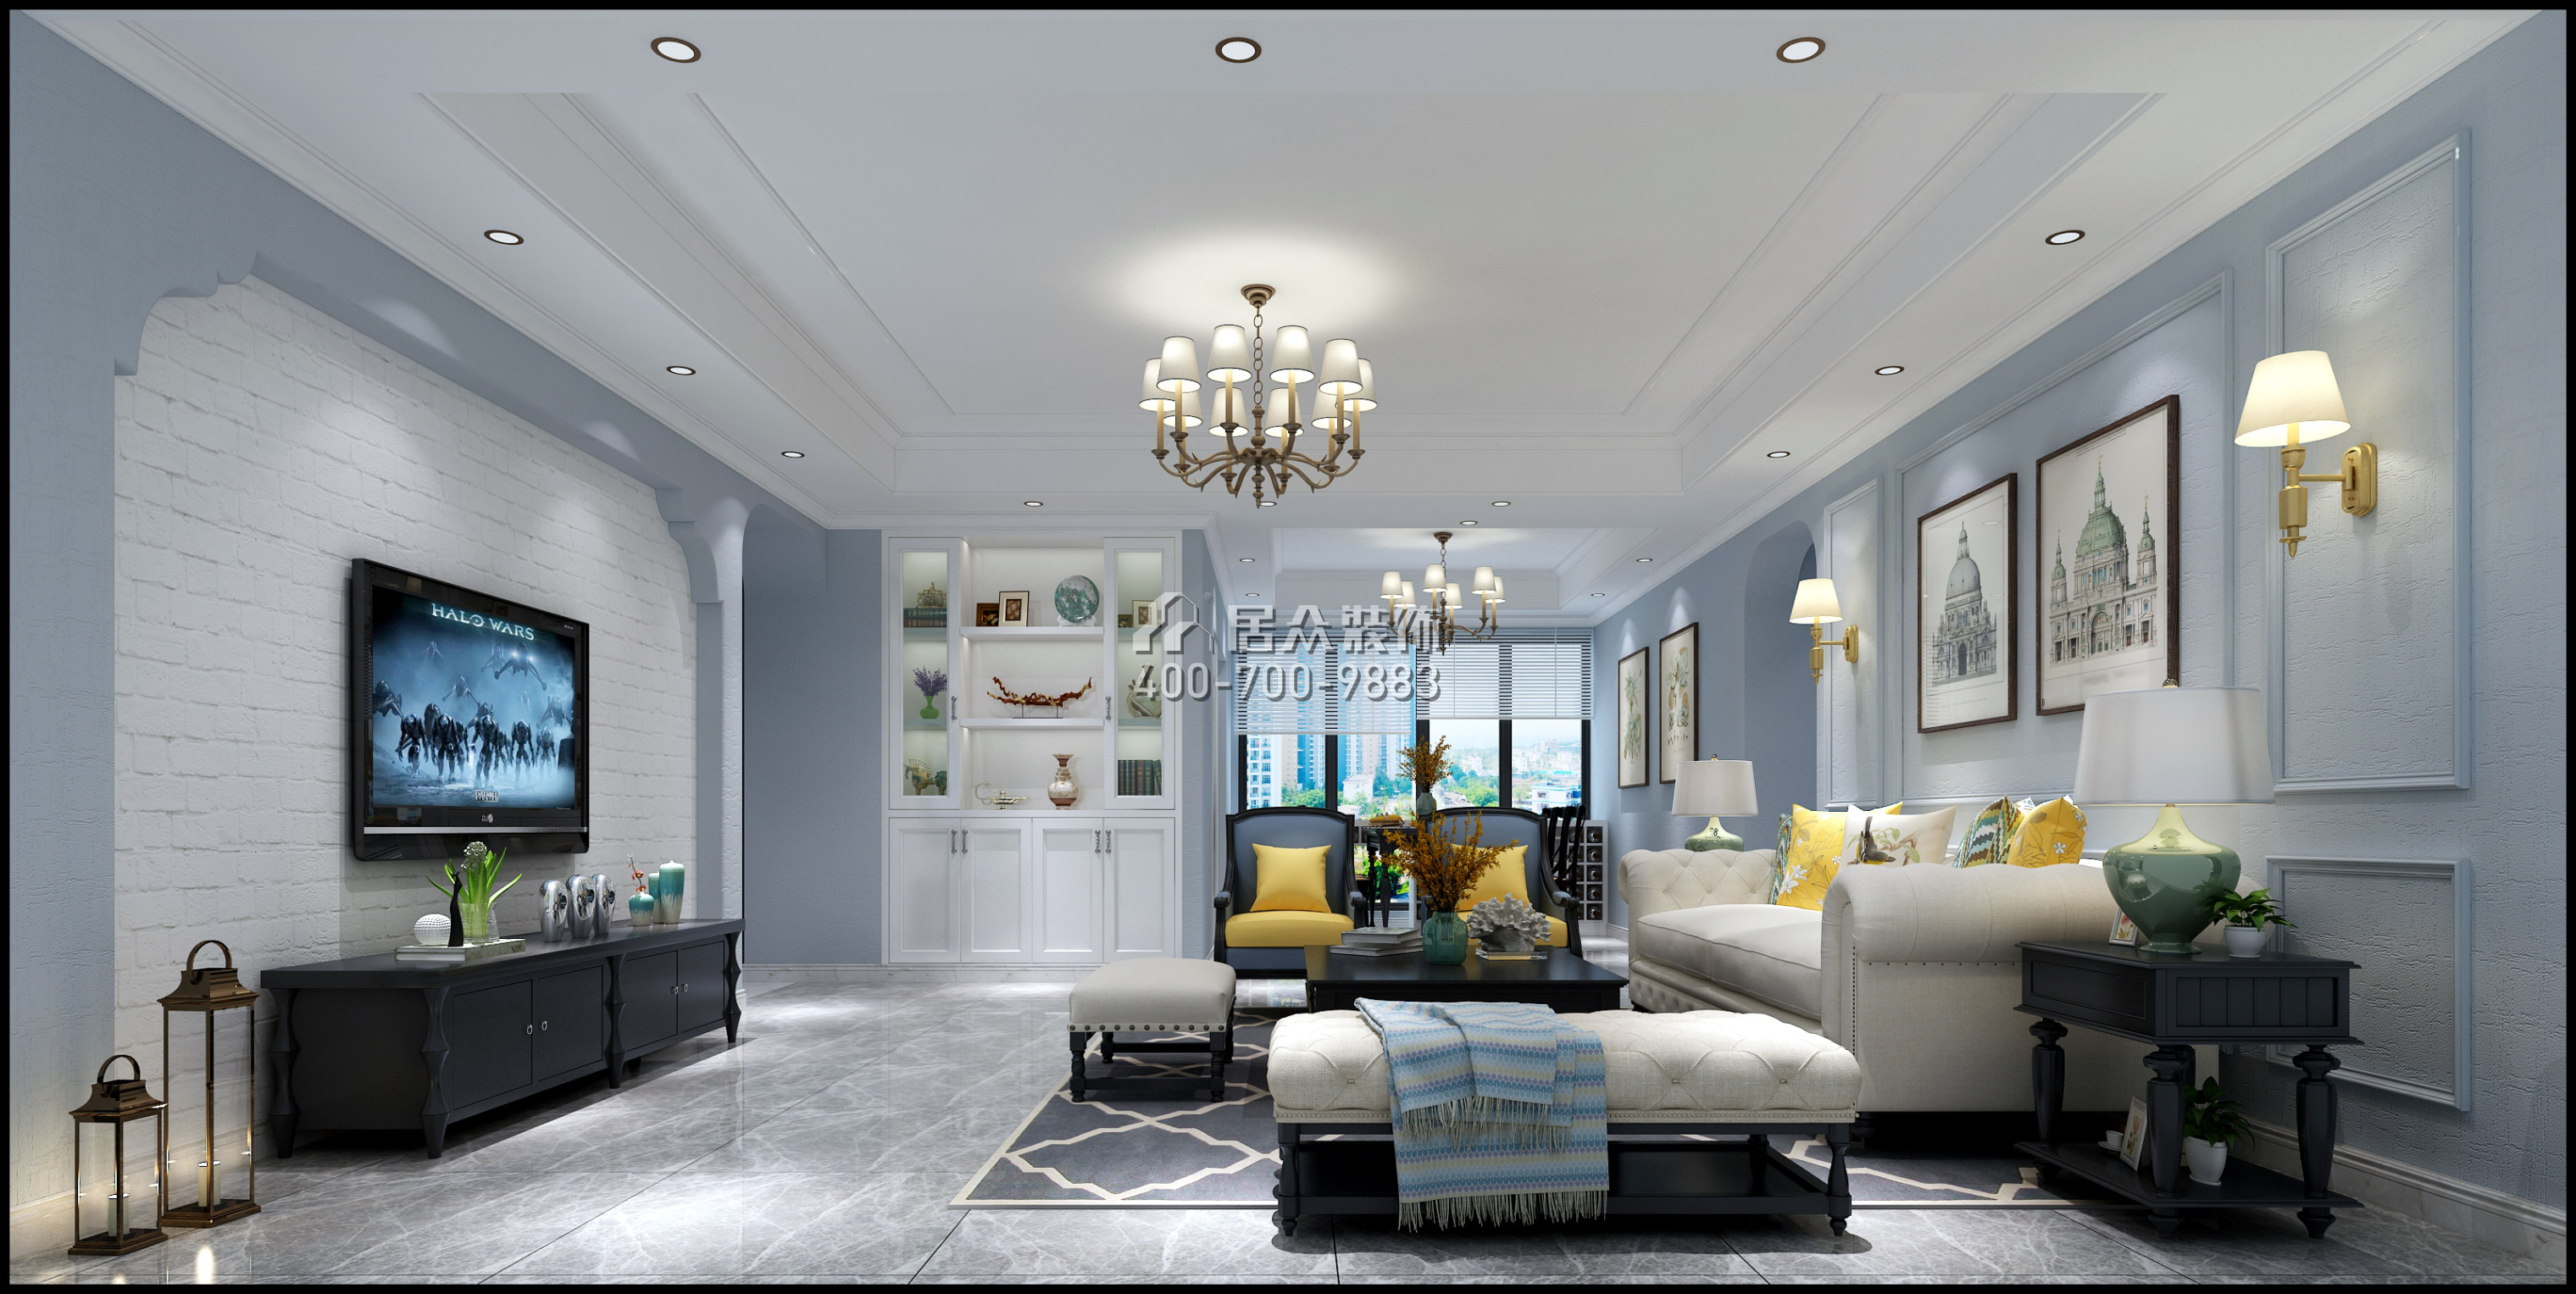 仁山智水花园一期157平方米美式风格平层户型客厅装修效果图